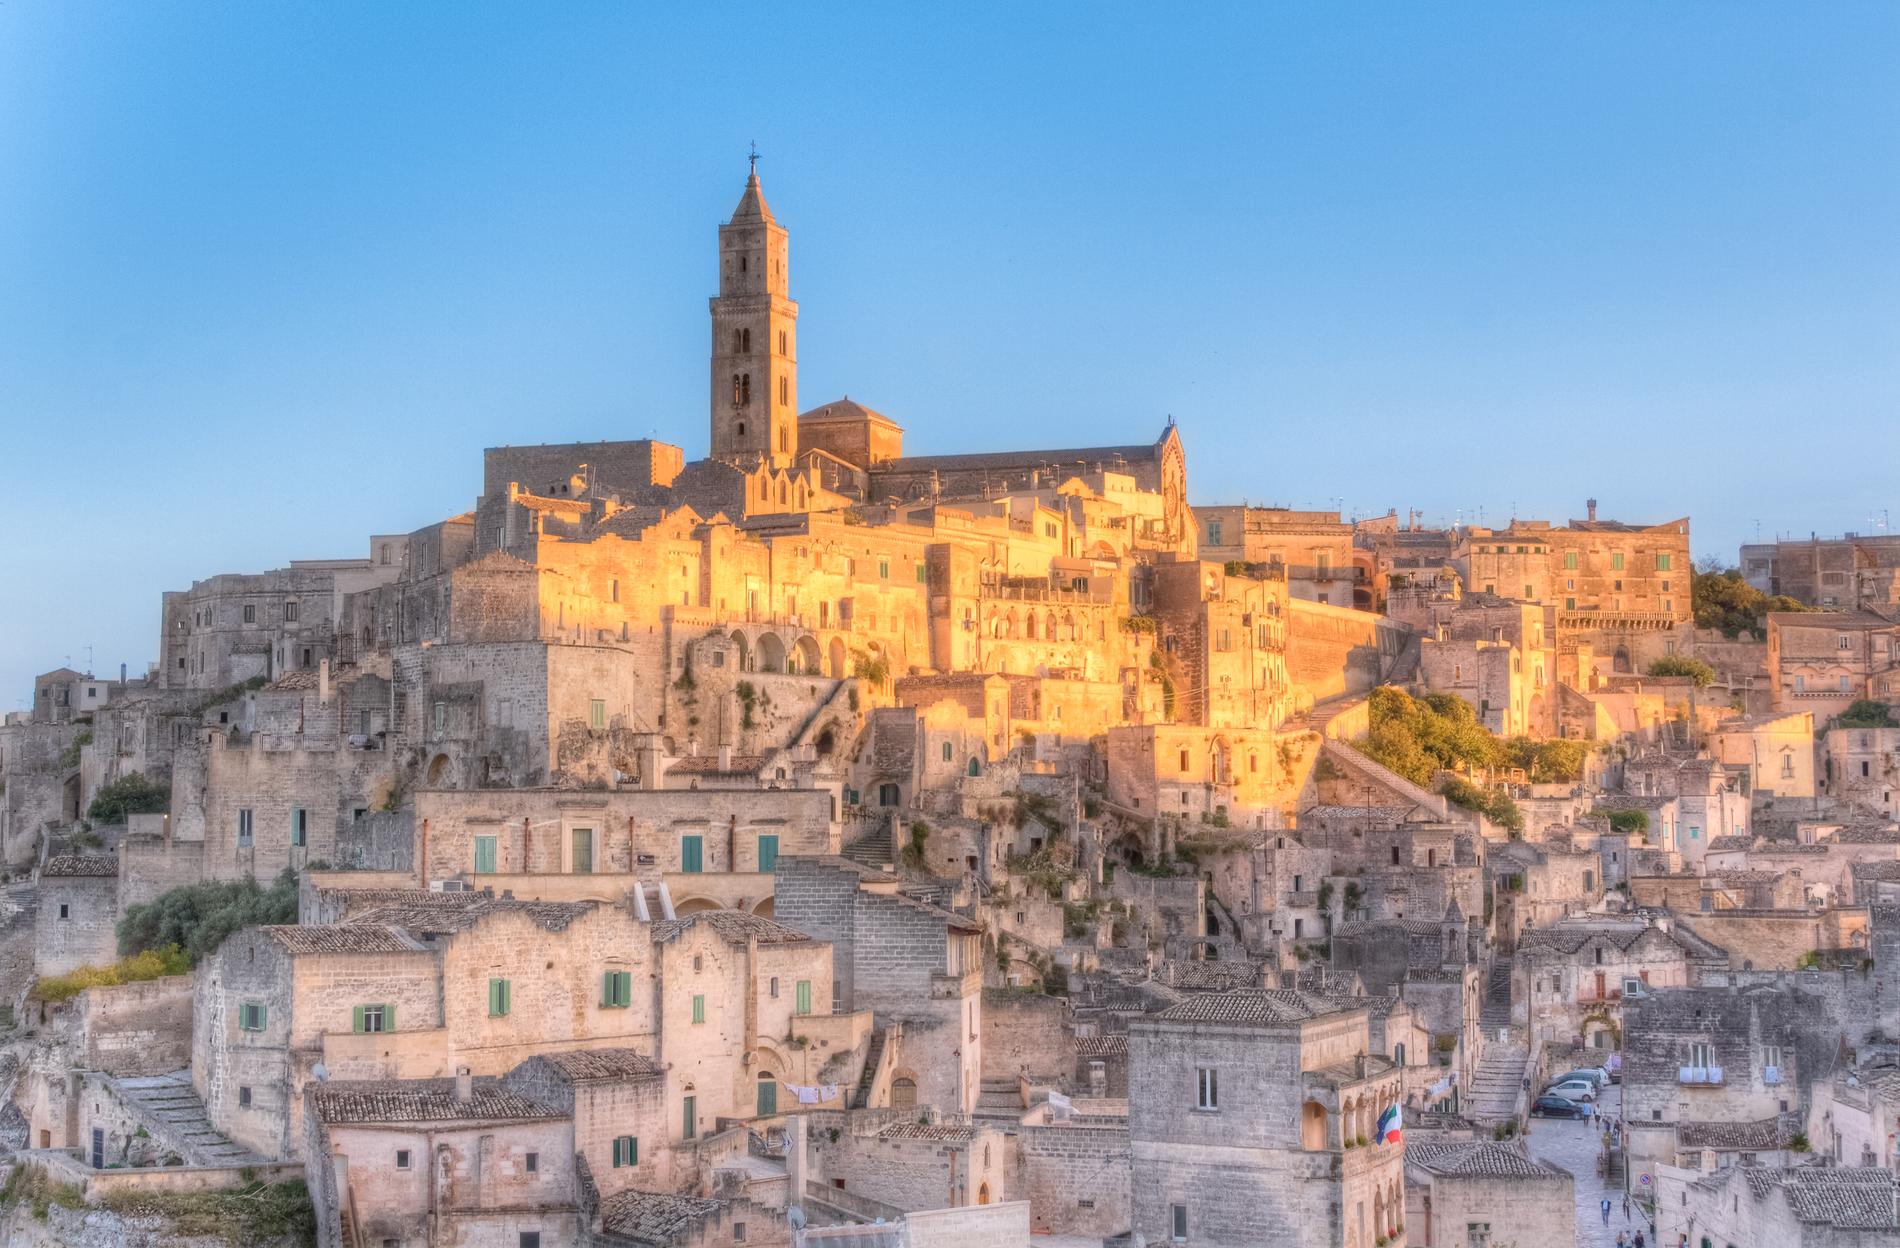 Staden Matera i södra Italien är årets kulturhuvudstad